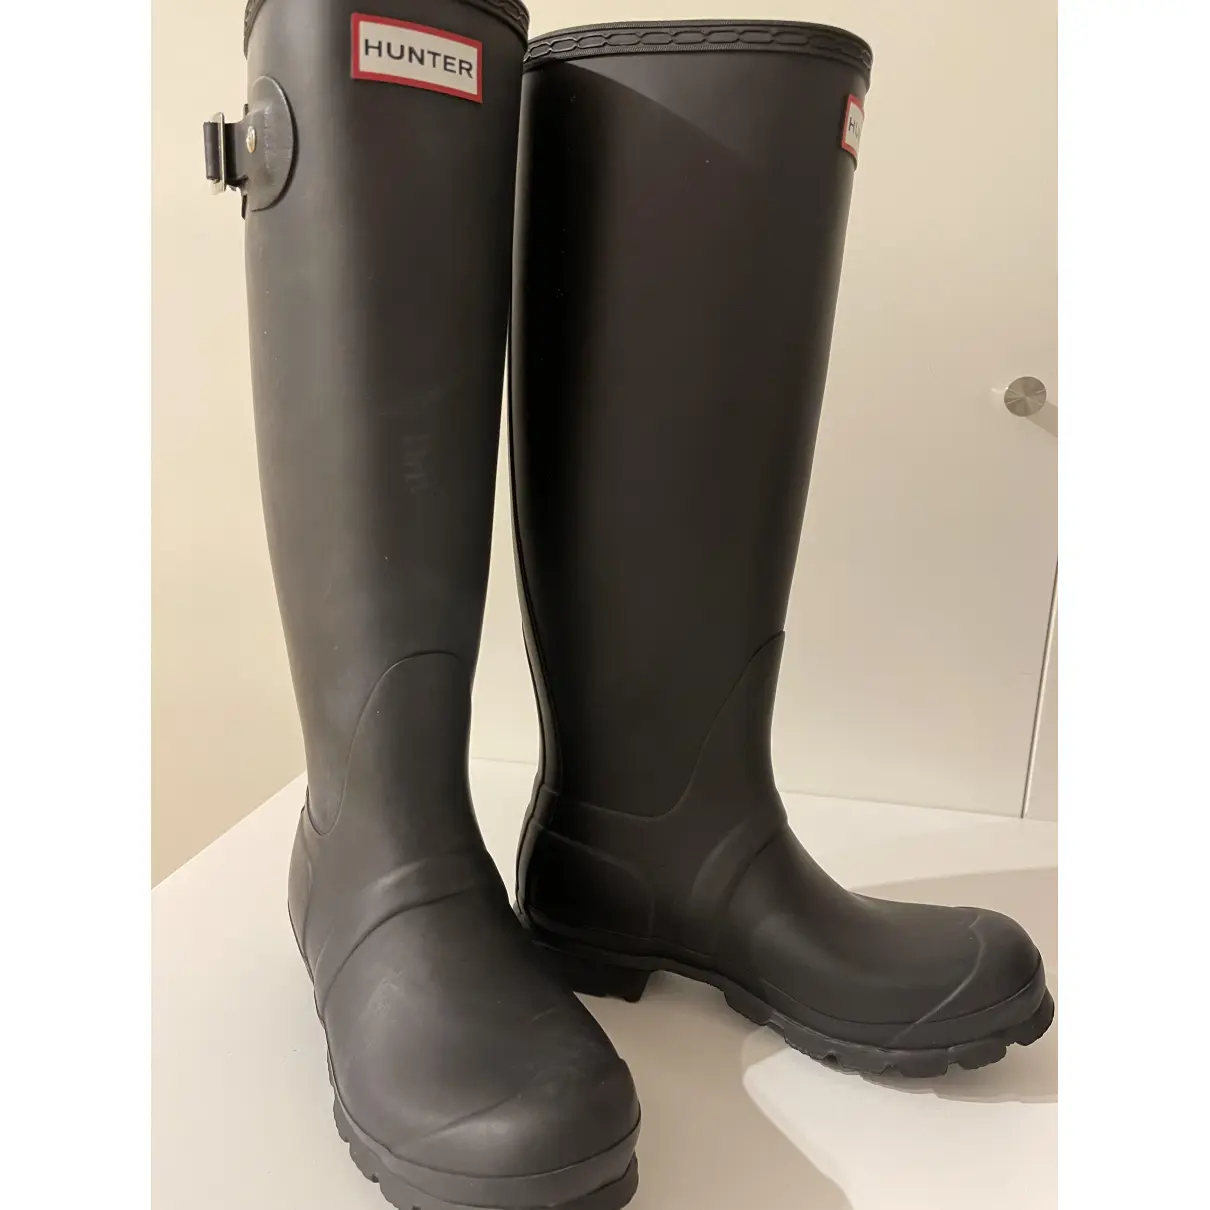 Buy Hunter Wellington boots online